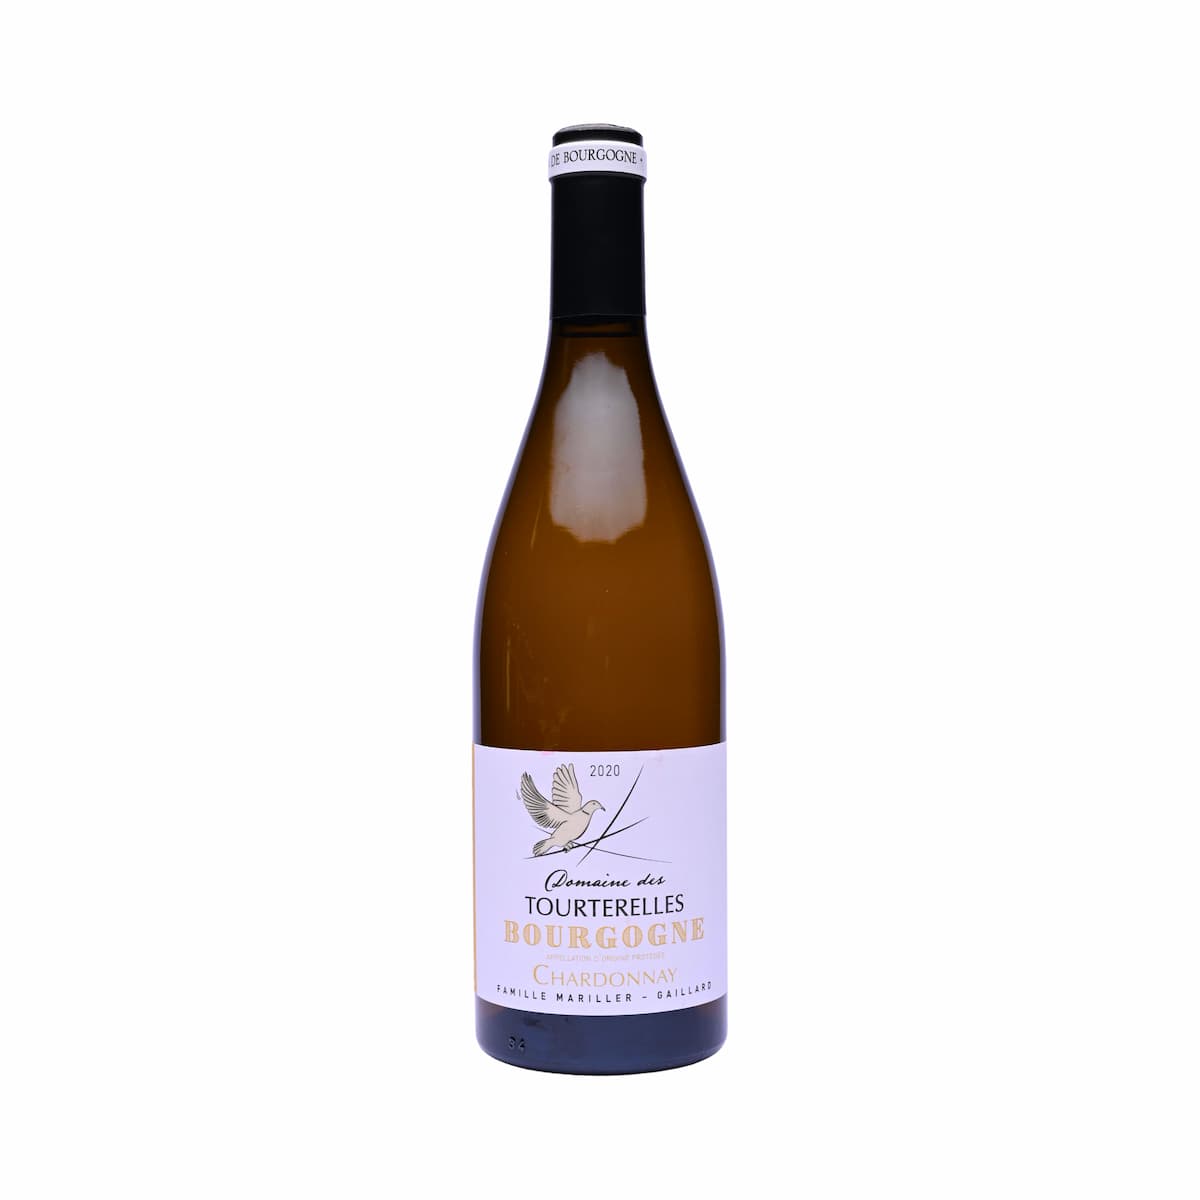 Add 1 x Domaine des Tourterelles Bourgogne Chardonnay 2020